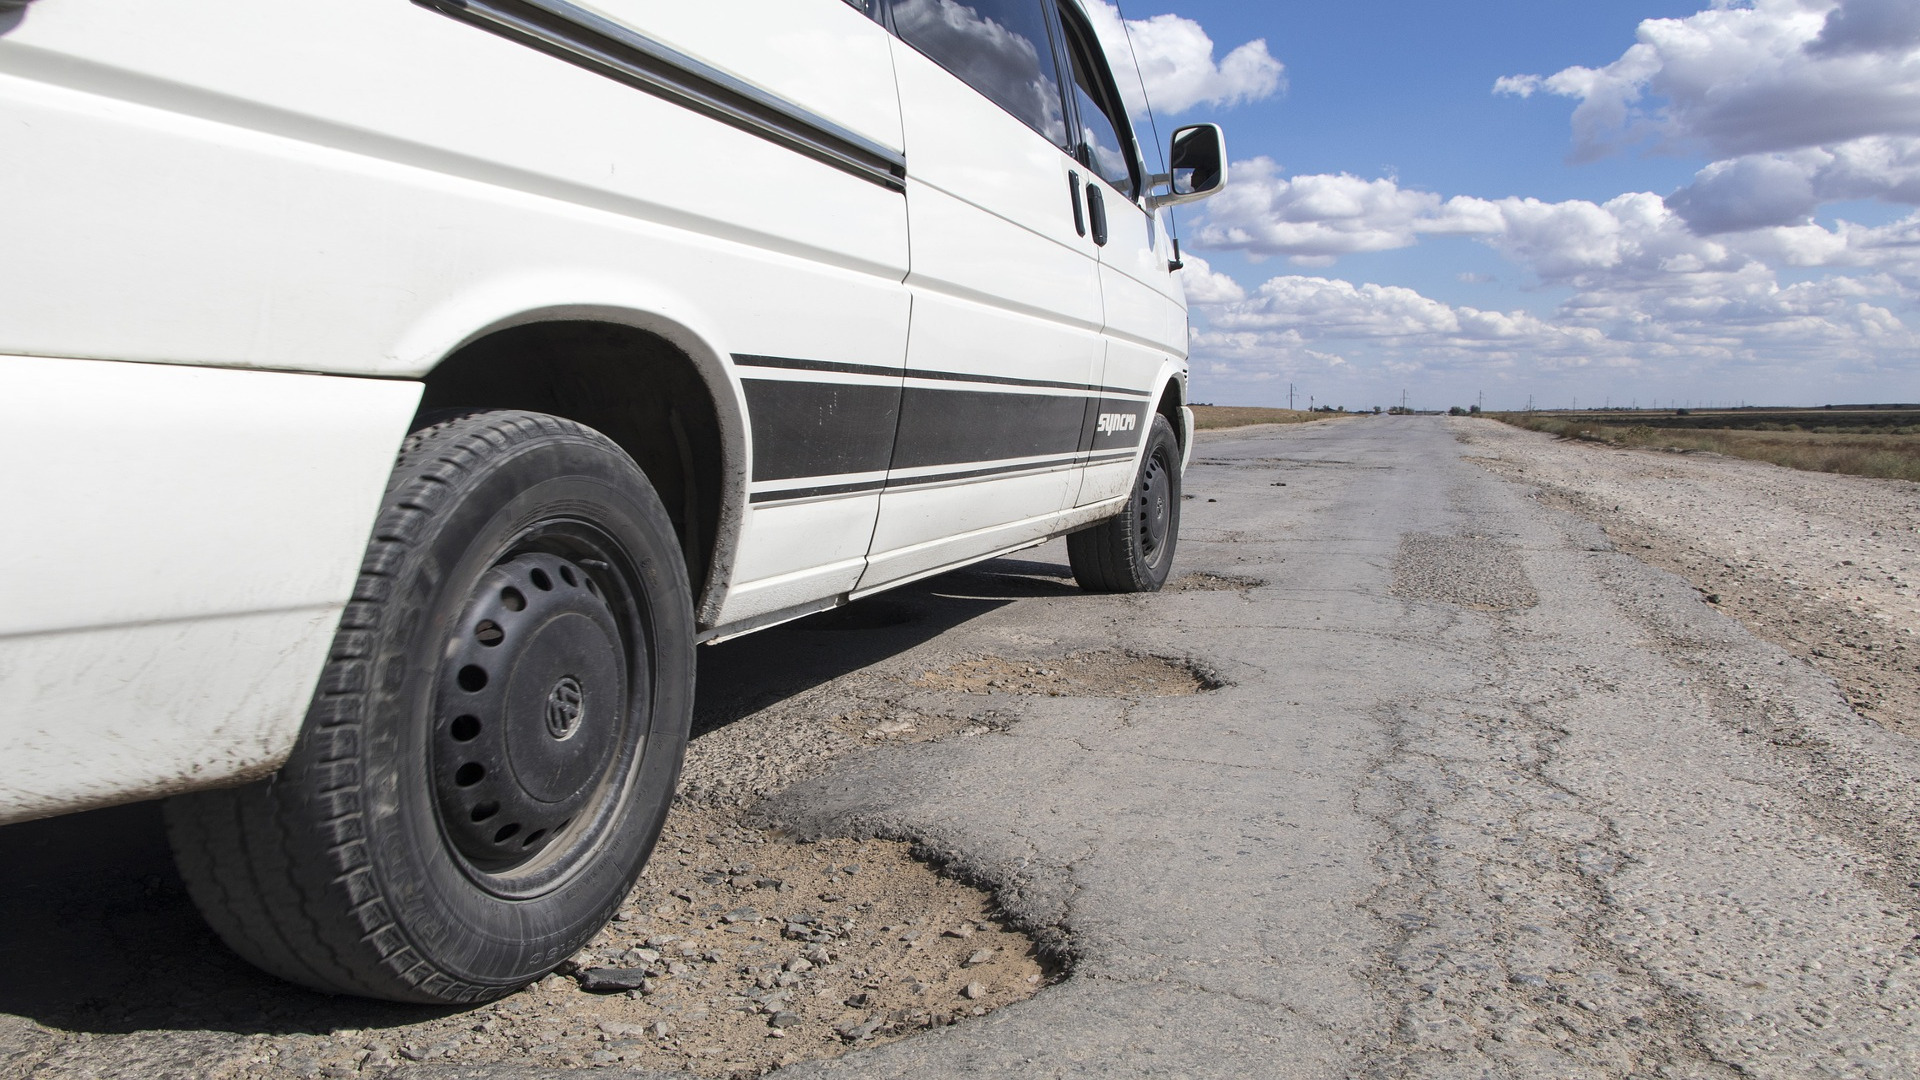 Si sufres un accidente por culpa del mal estado de la carretera puedes reclama los daños1920